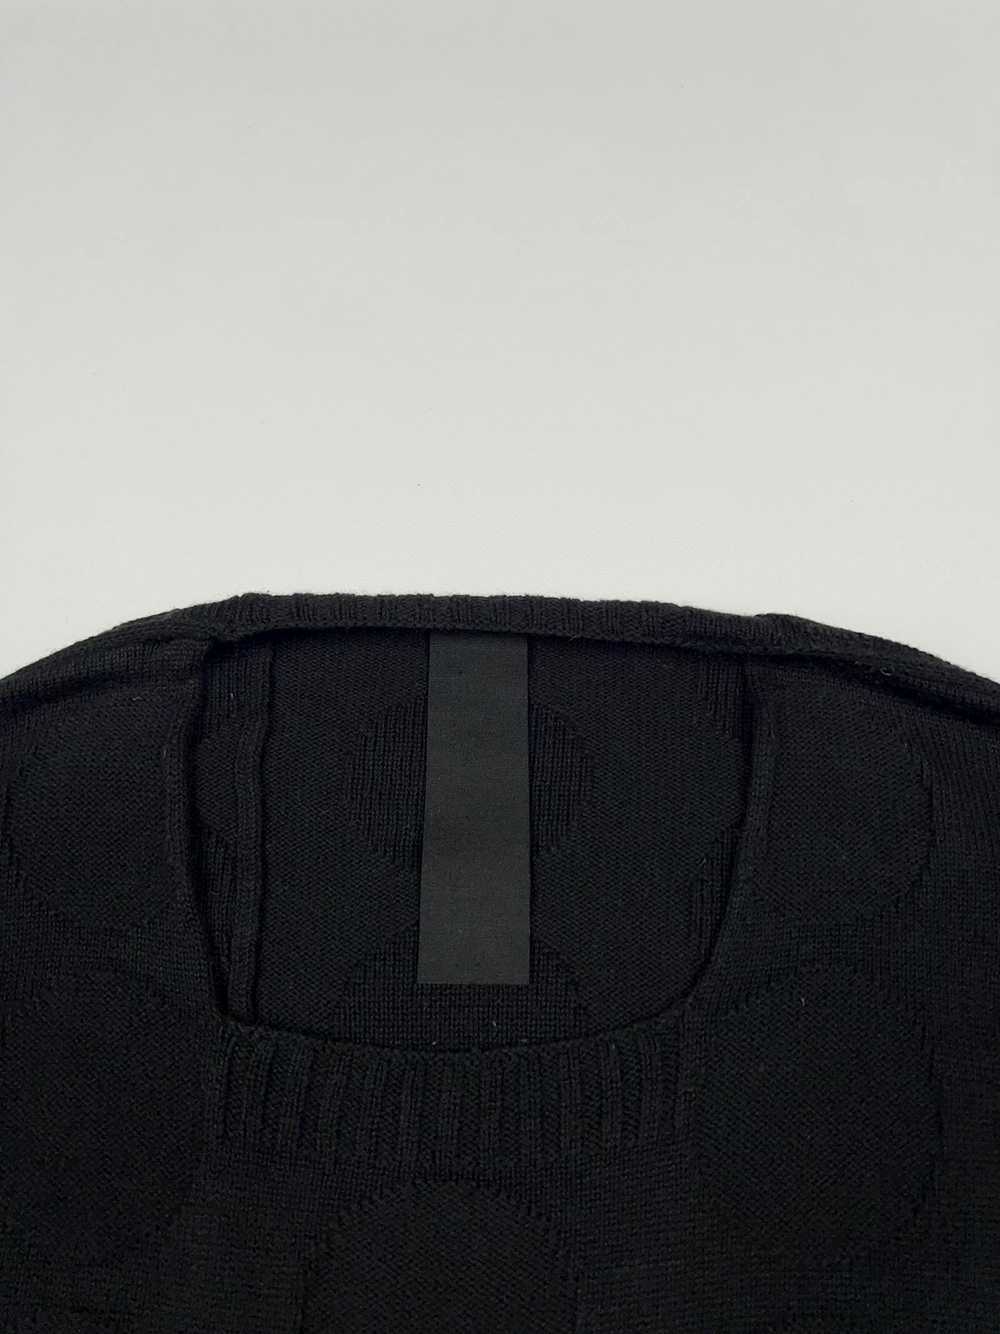 Rundholz Rundholz Black Label Wool Cotton Oversiz… - image 7